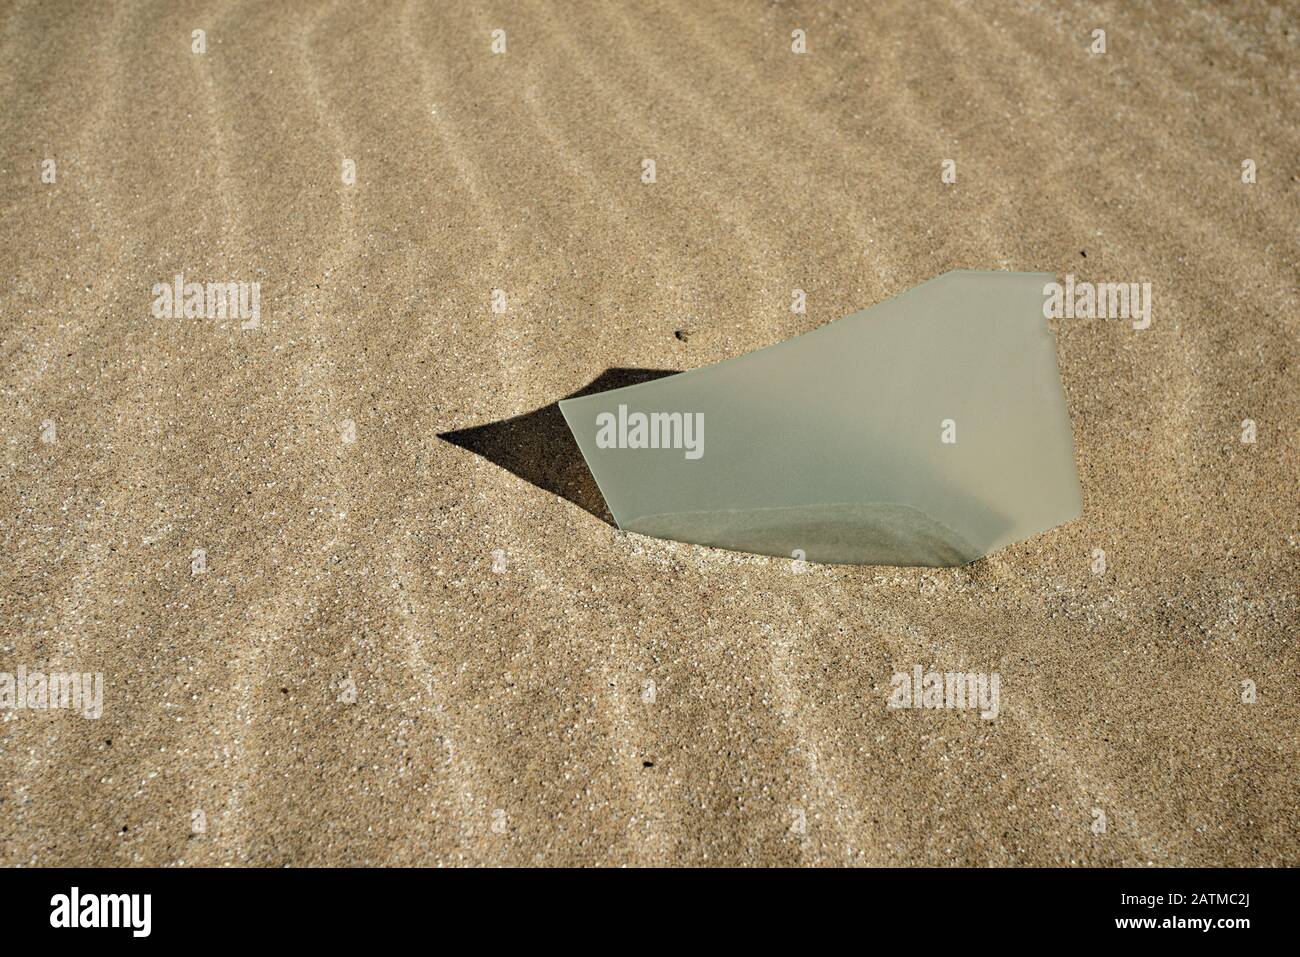 Tagliente, bordo di vetro frastagliato annegato in sabbia con ombra. Foto Stock